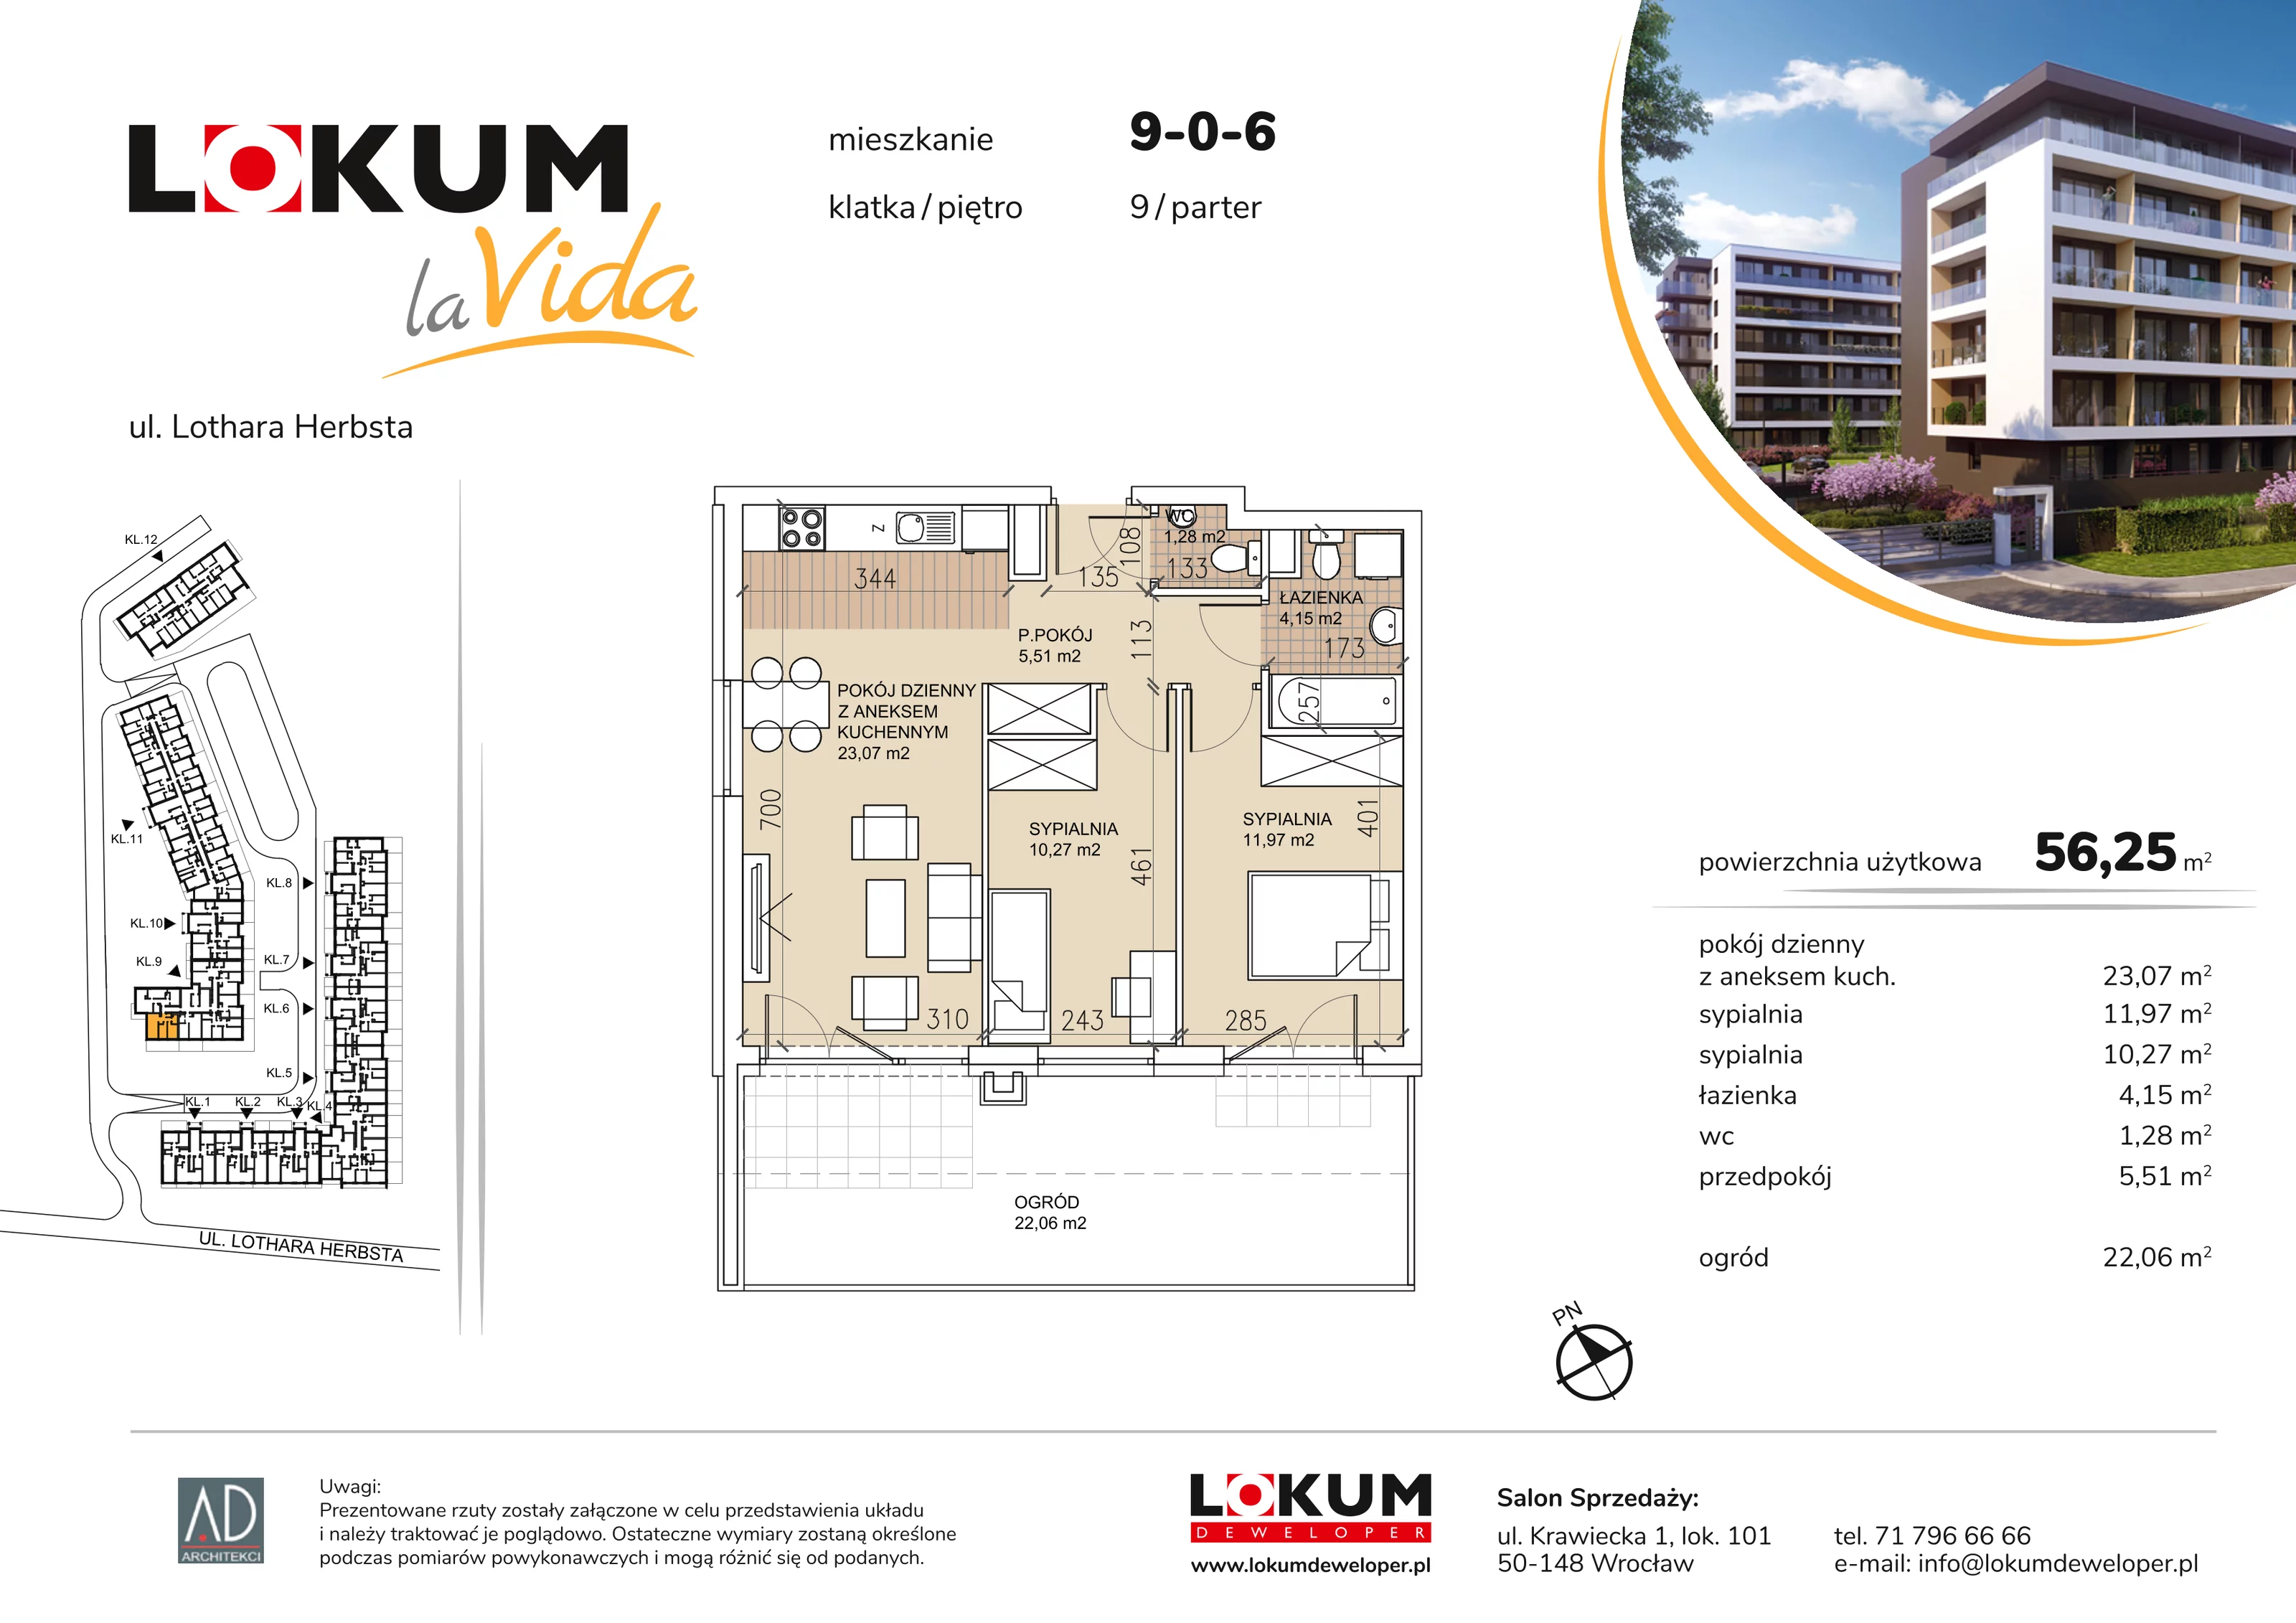 Mieszkanie 56,25 m², parter, oferta nr 9-0-6, Lokum la Vida, Wrocław, Sołtysowice, ul. Lothara Herbsta